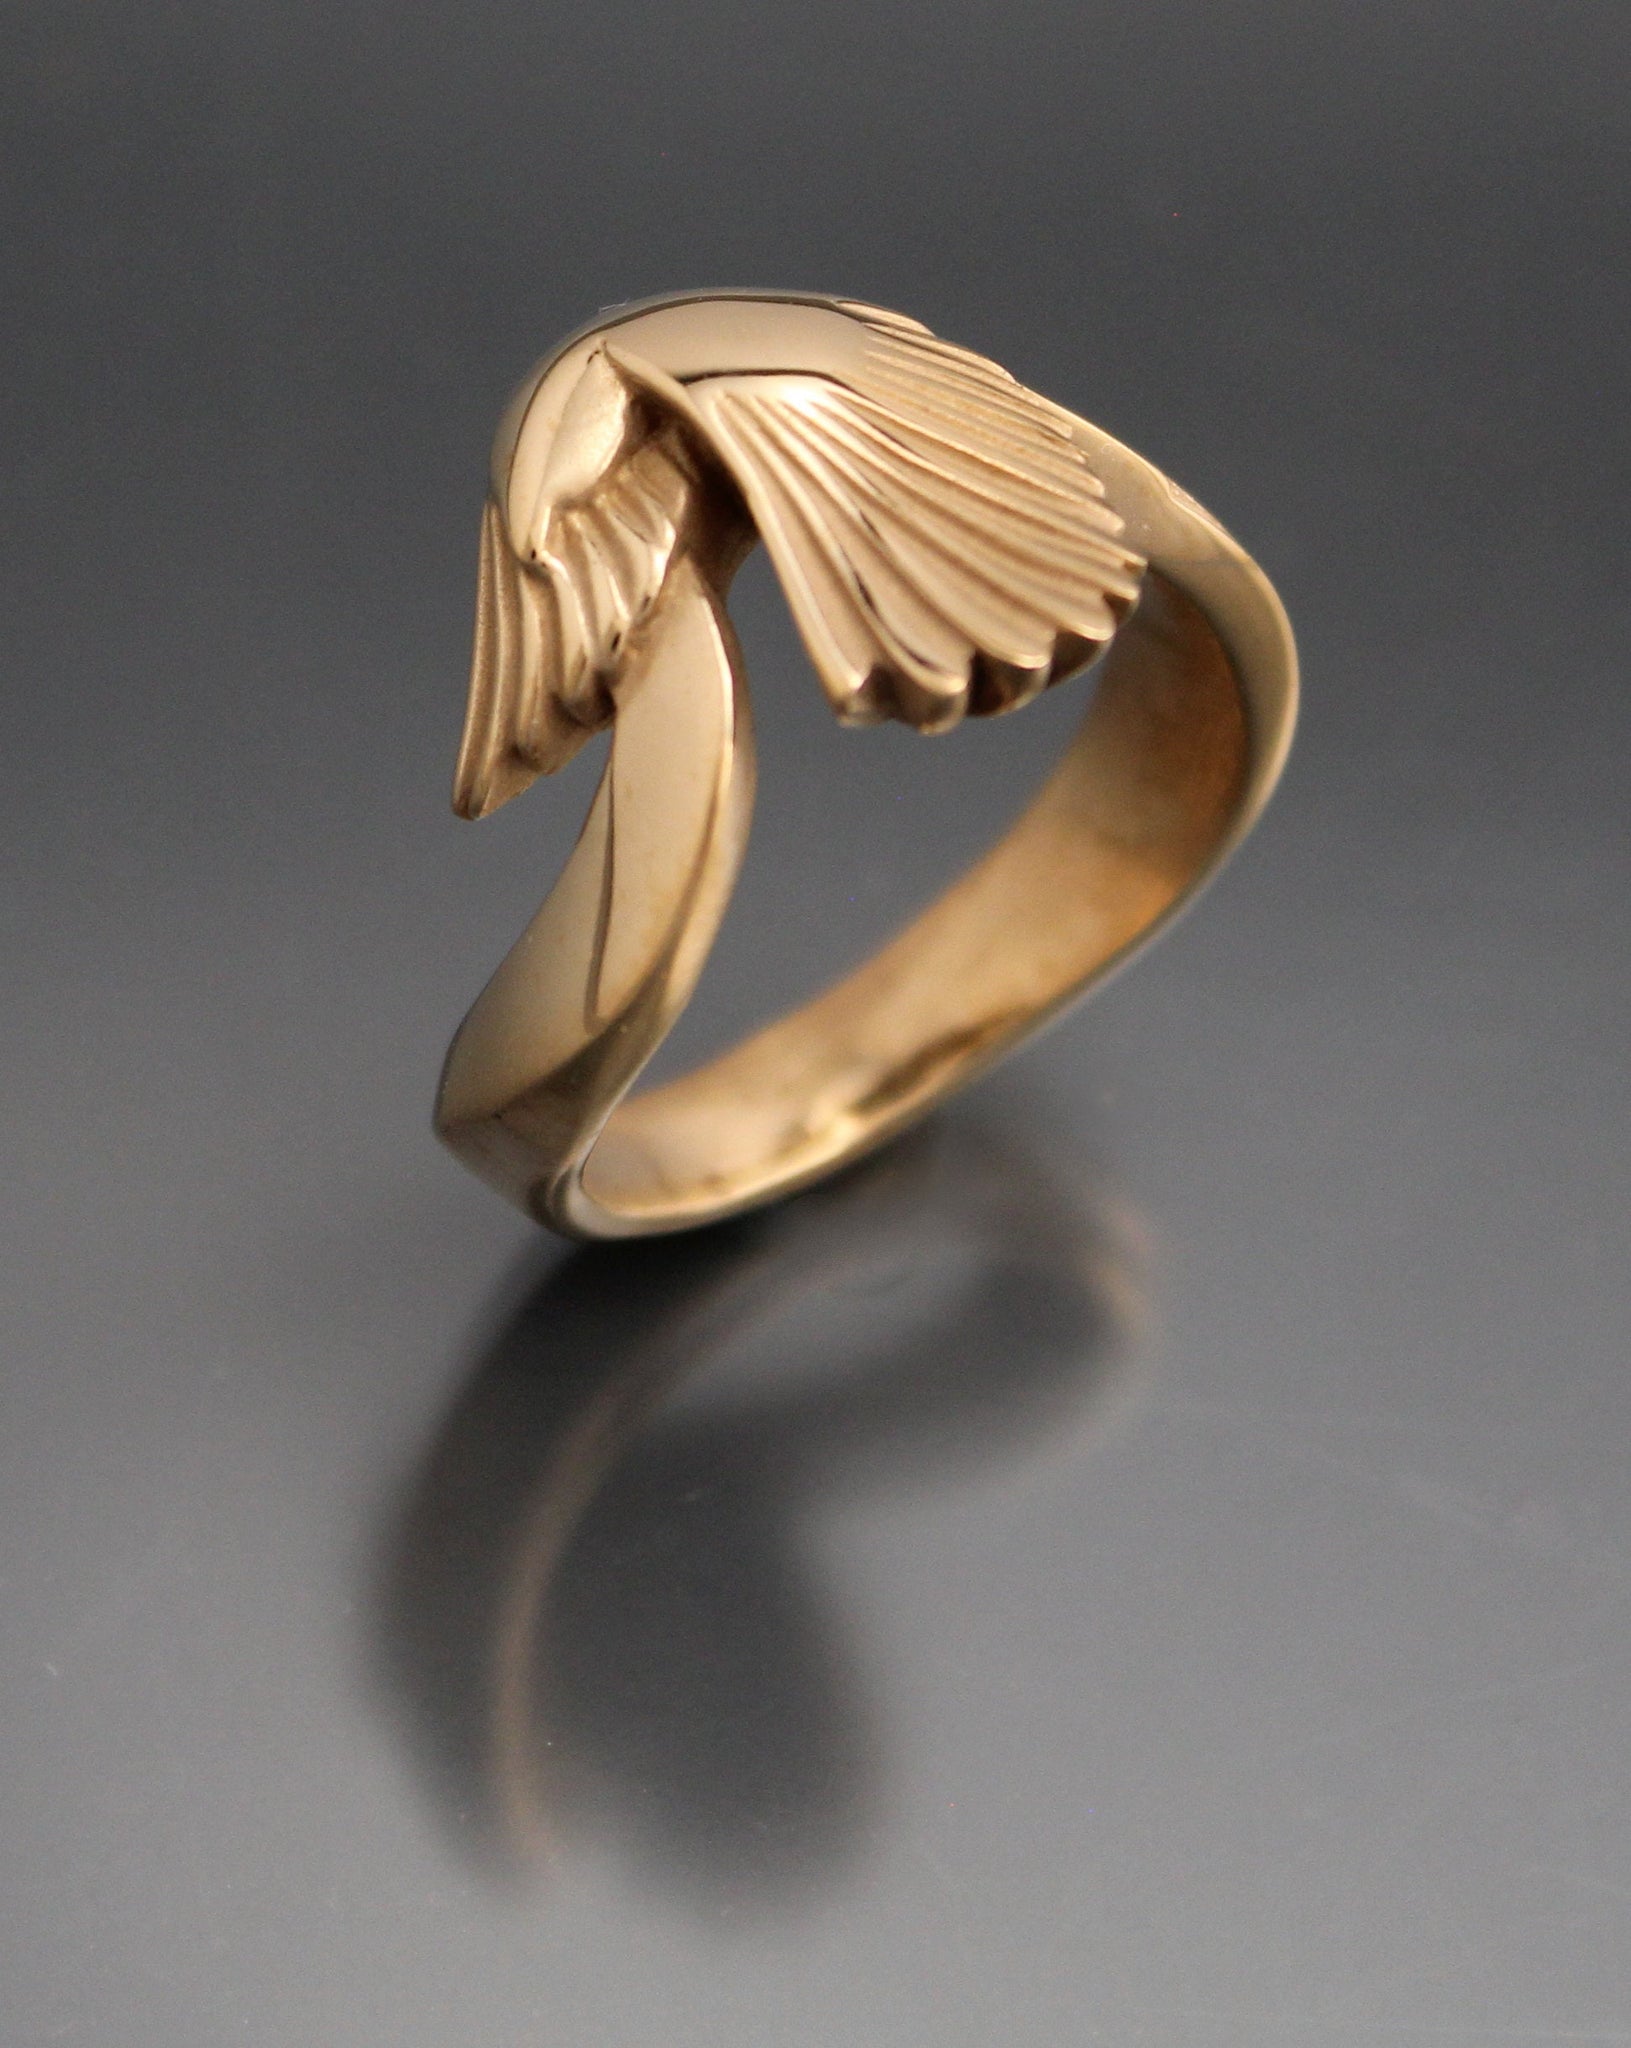 bronze magpie ring